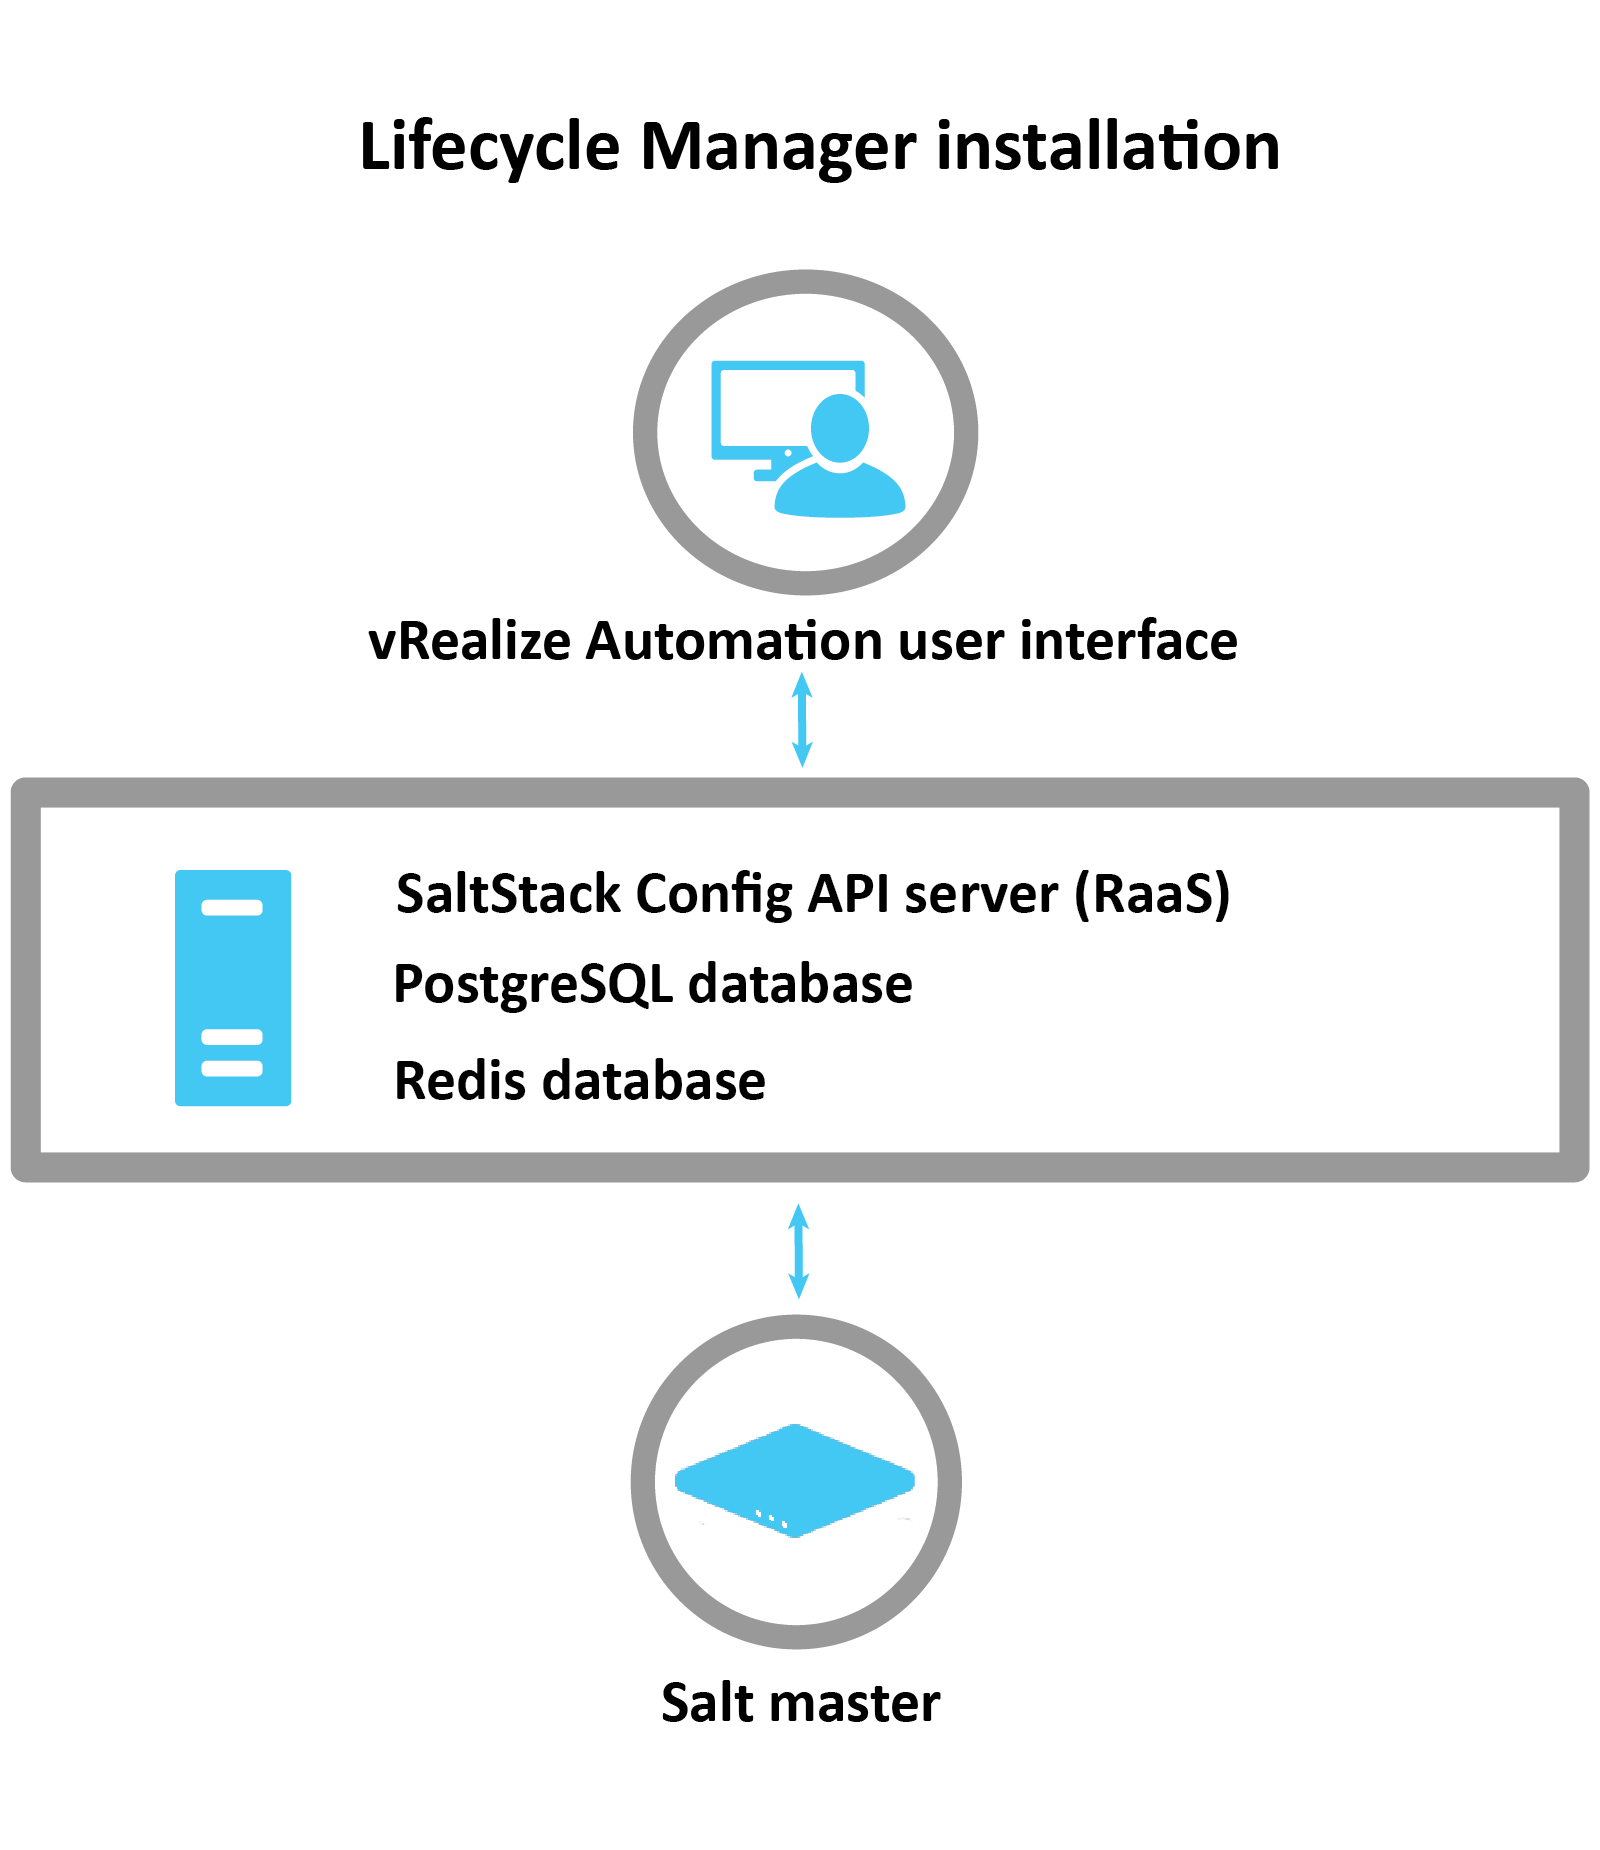 Diagramm, in dem erläutert wird, wie SaltStack mithilfe von LCM installiert wird: LCM verwendet die vRA-Schnittstelle, um den RaaS-Server, die Postgres-Datenbank und die Redis-Datenbank zu installieren. Nach der Installation wird der Salt-Master konfiguriert.